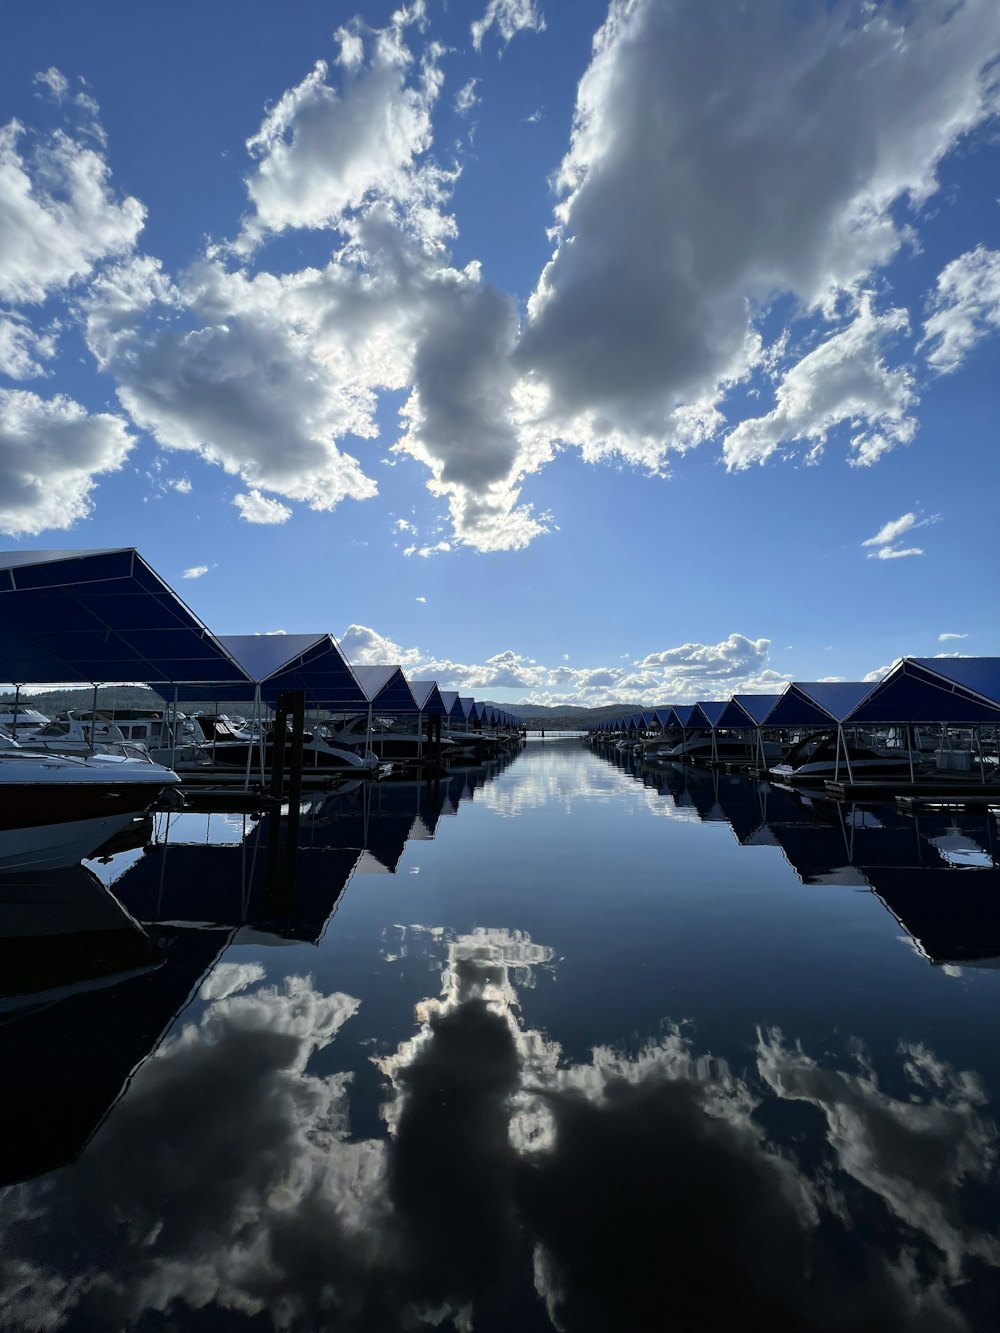 ein Gewässer, umgeben von Booten unter einem bewölkten blauen Himmel